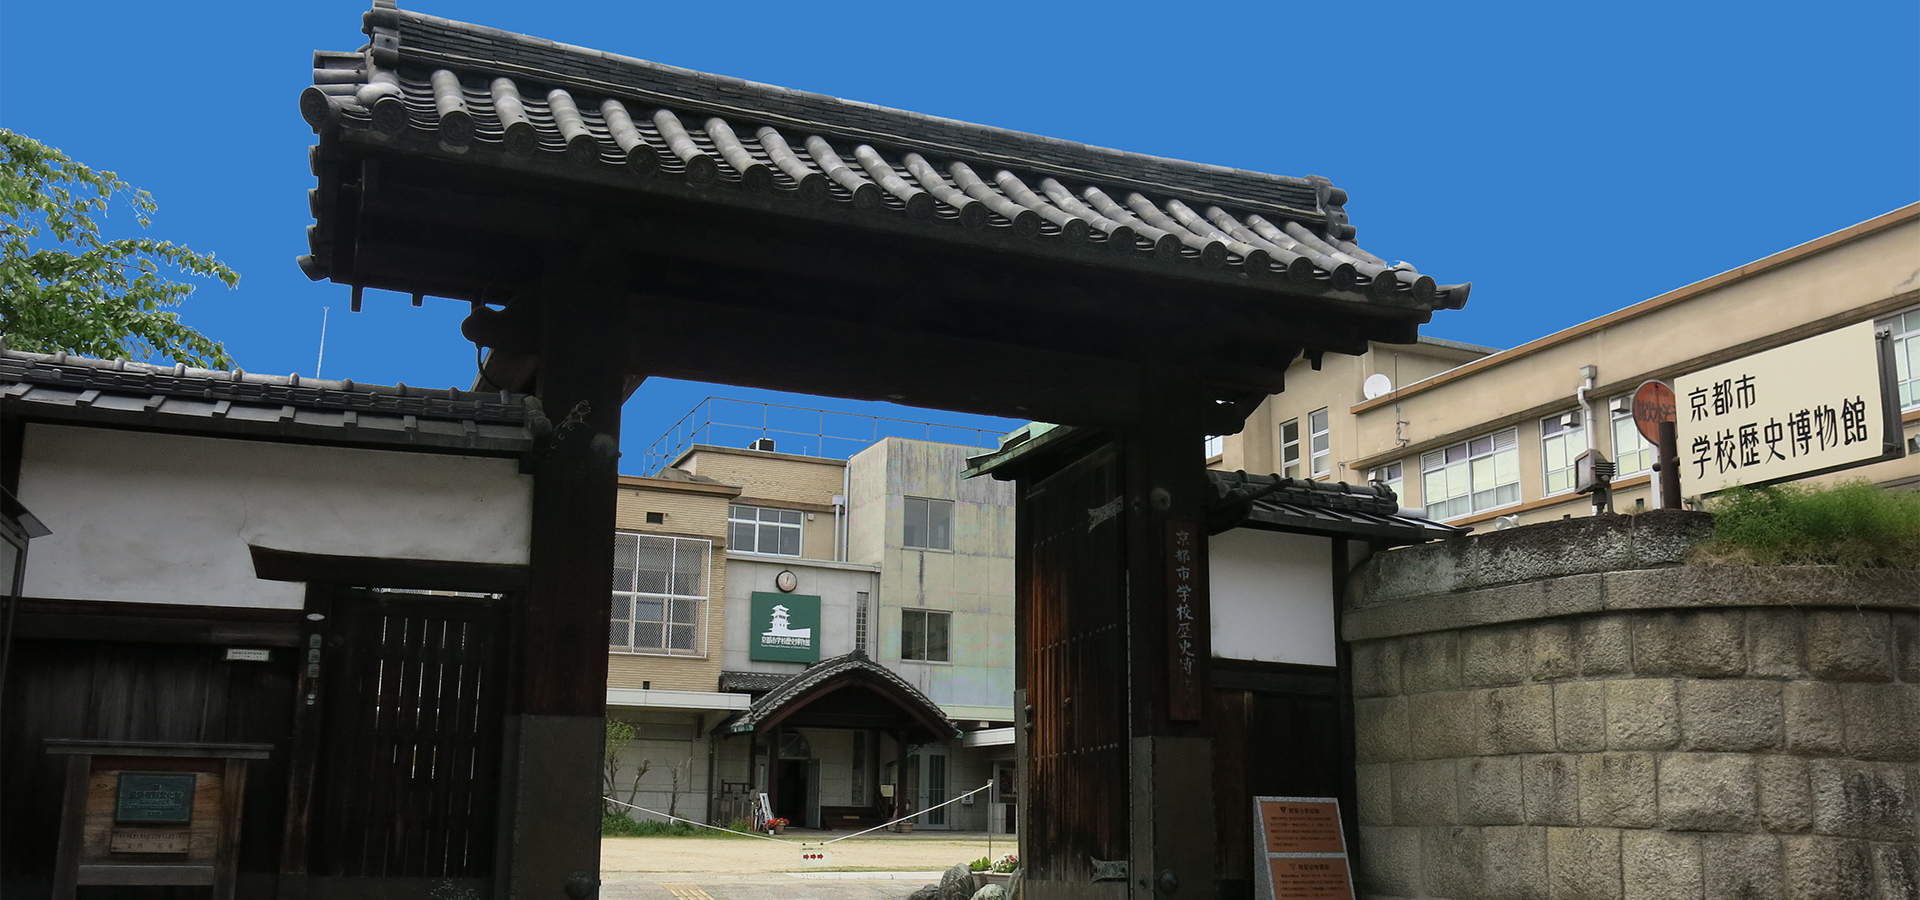 교토 시 학교 역사 박물관